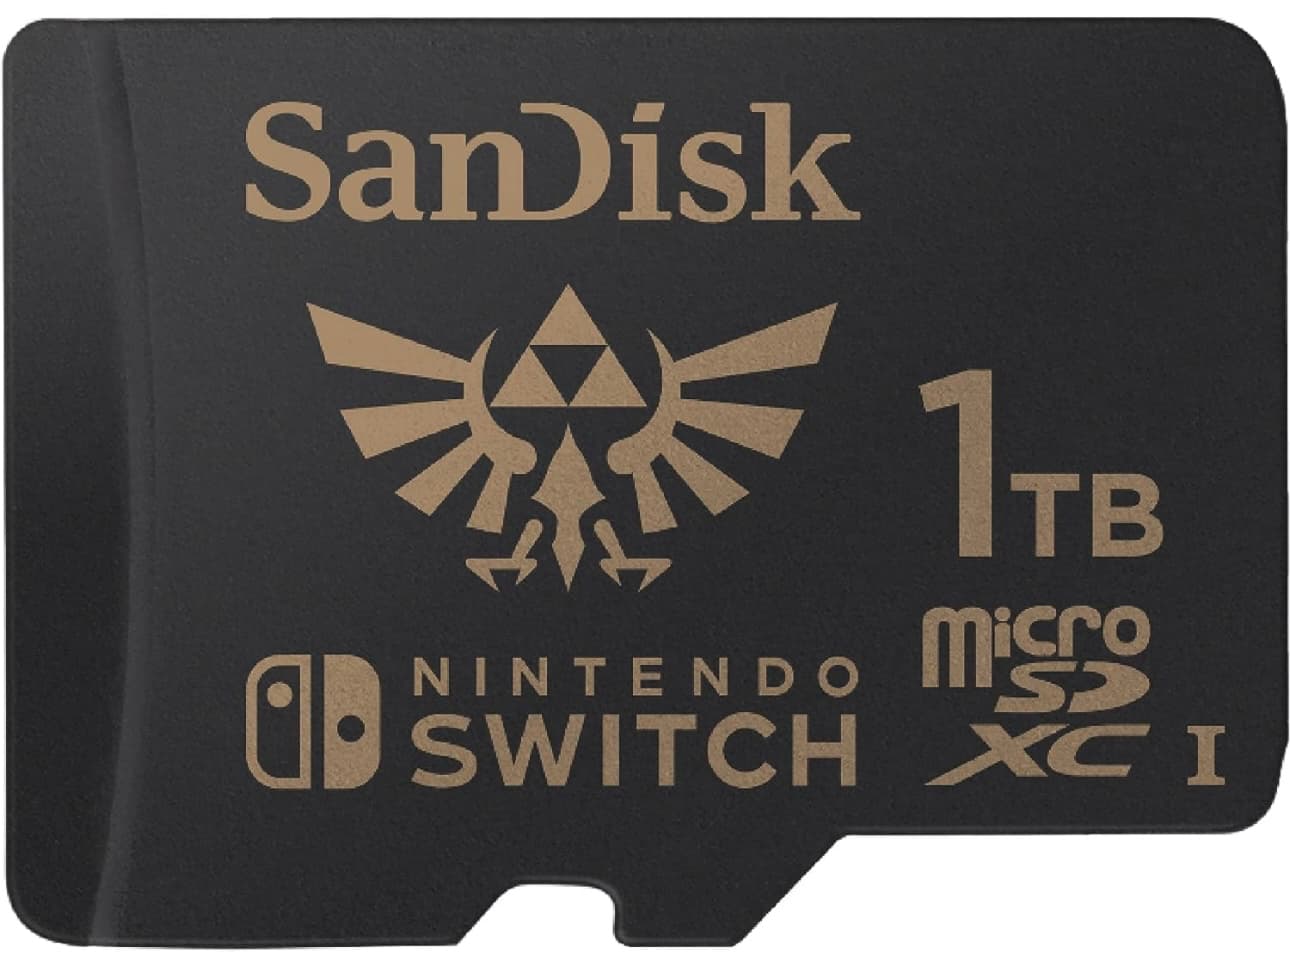 بطاقة SanDisk microSD بسعة 1 تيرابايت لجهاز Nintendo Switch، بتصميم Zelda.